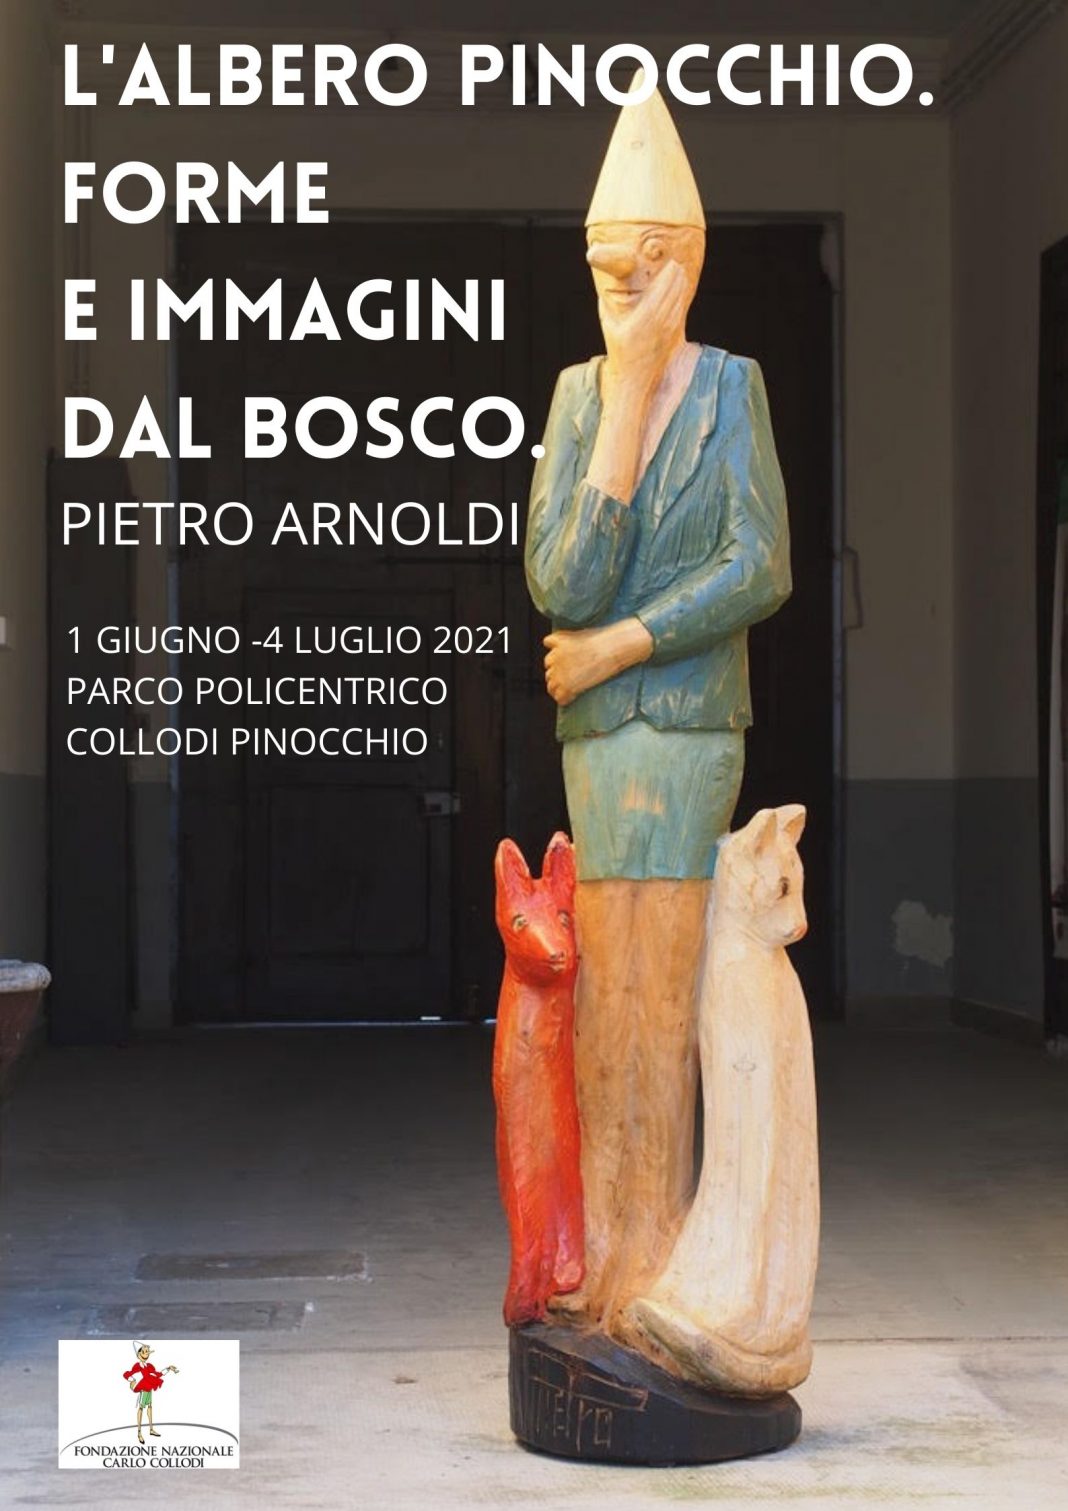 Pietro Arnoldi – L’Albero Pinocchio. Forme e immagini dal boscohttps://www.exibart.com/repository/media/formidable/11/img/37d/Lalbero-Pinocchio.-Forme-e-immagini-dal-bosco-1068x1511.jpg